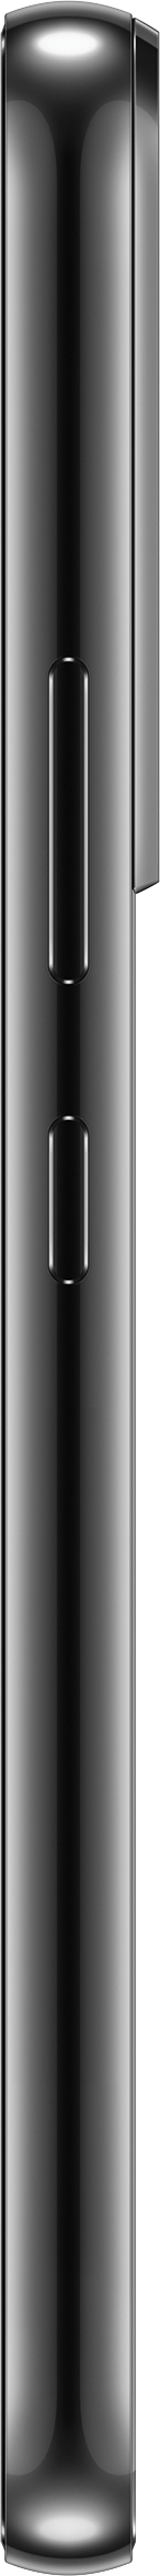 Samsung Galaxy S22 128GB Kaksois-SIM Phantom black